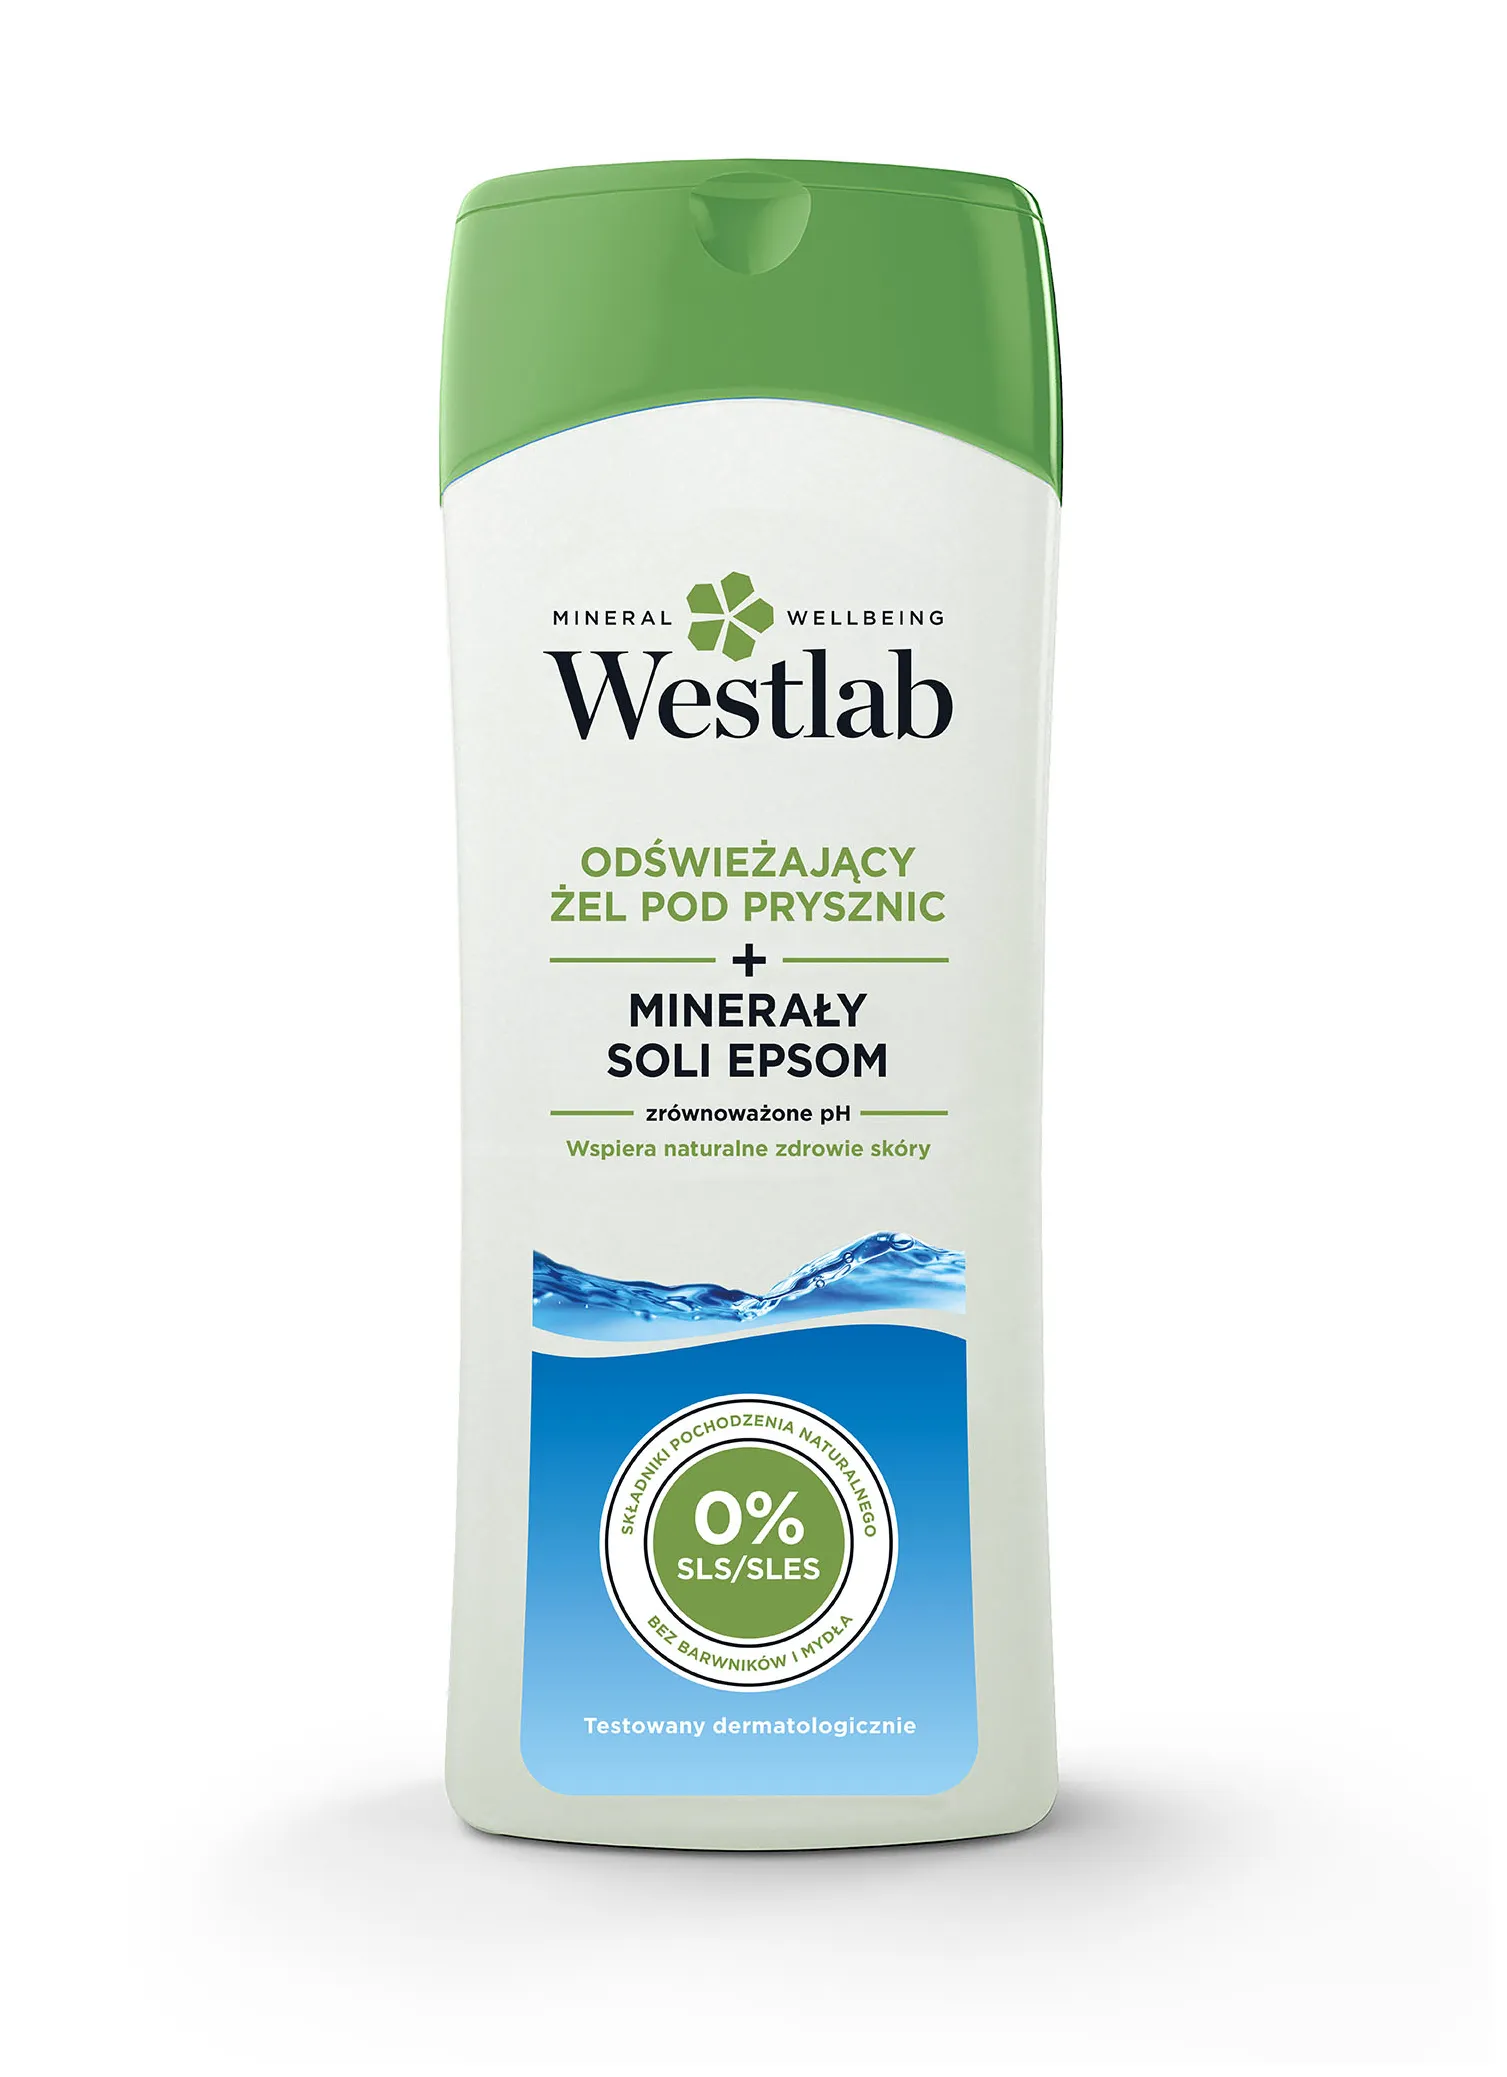 Westlab Odświeżający Żel Pod Prysznic z Minerałami Soli Epsom, 400 ml